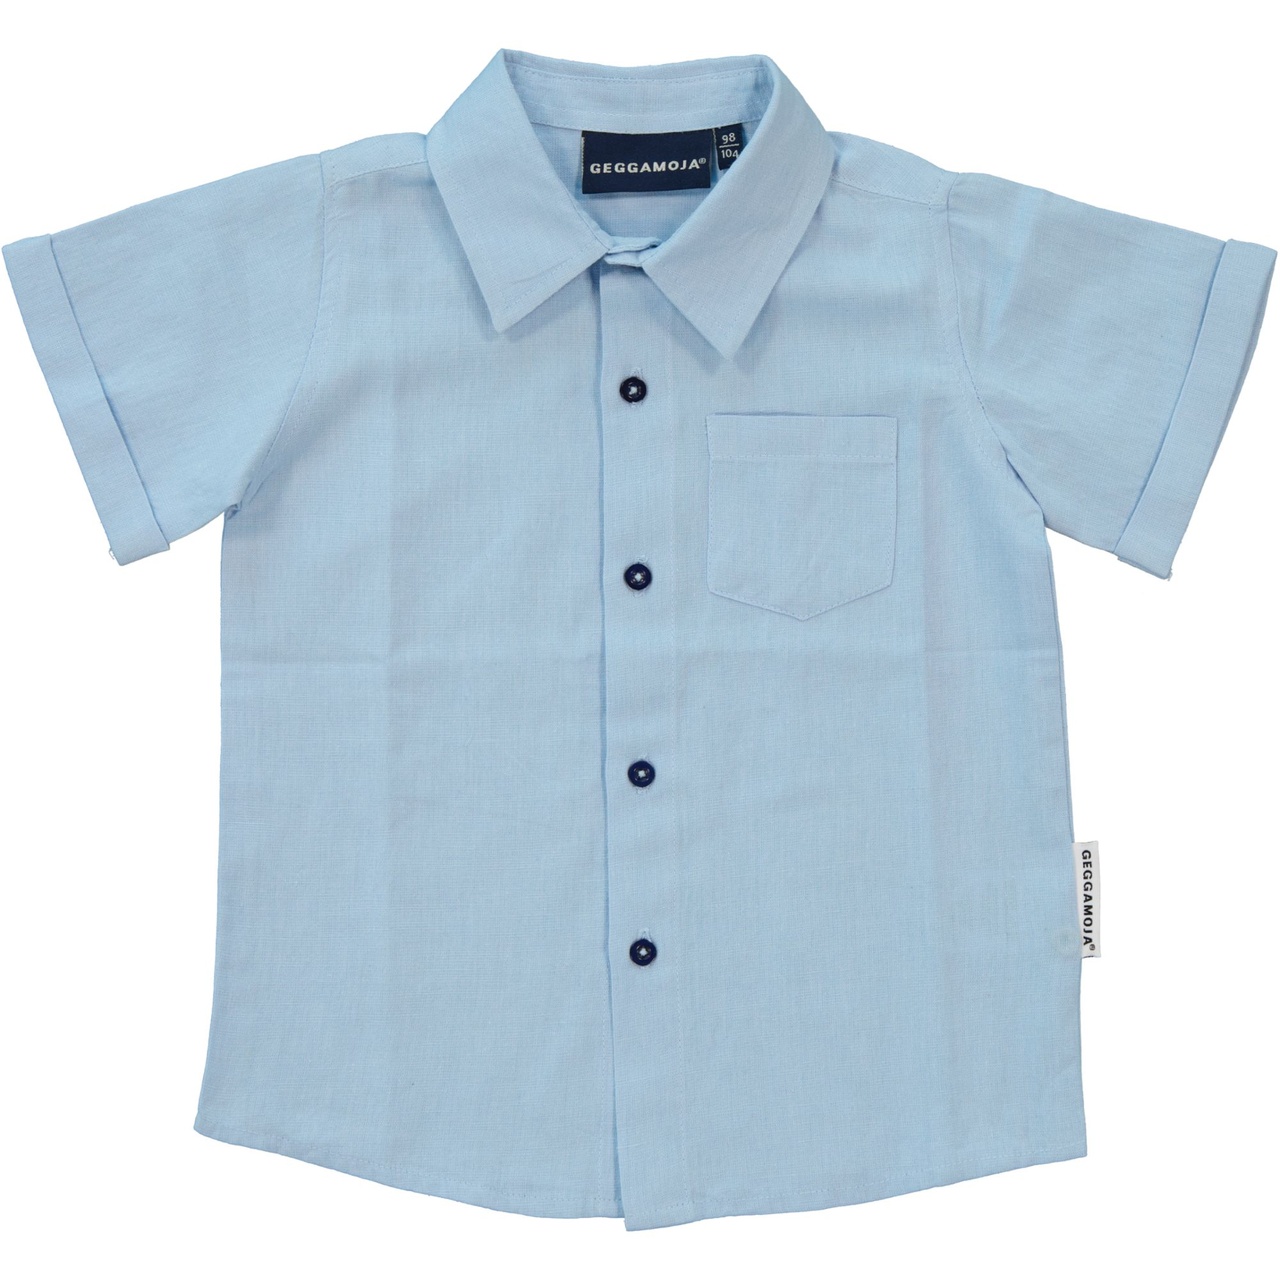 Linnen Shirt S.S Light blue 110/116